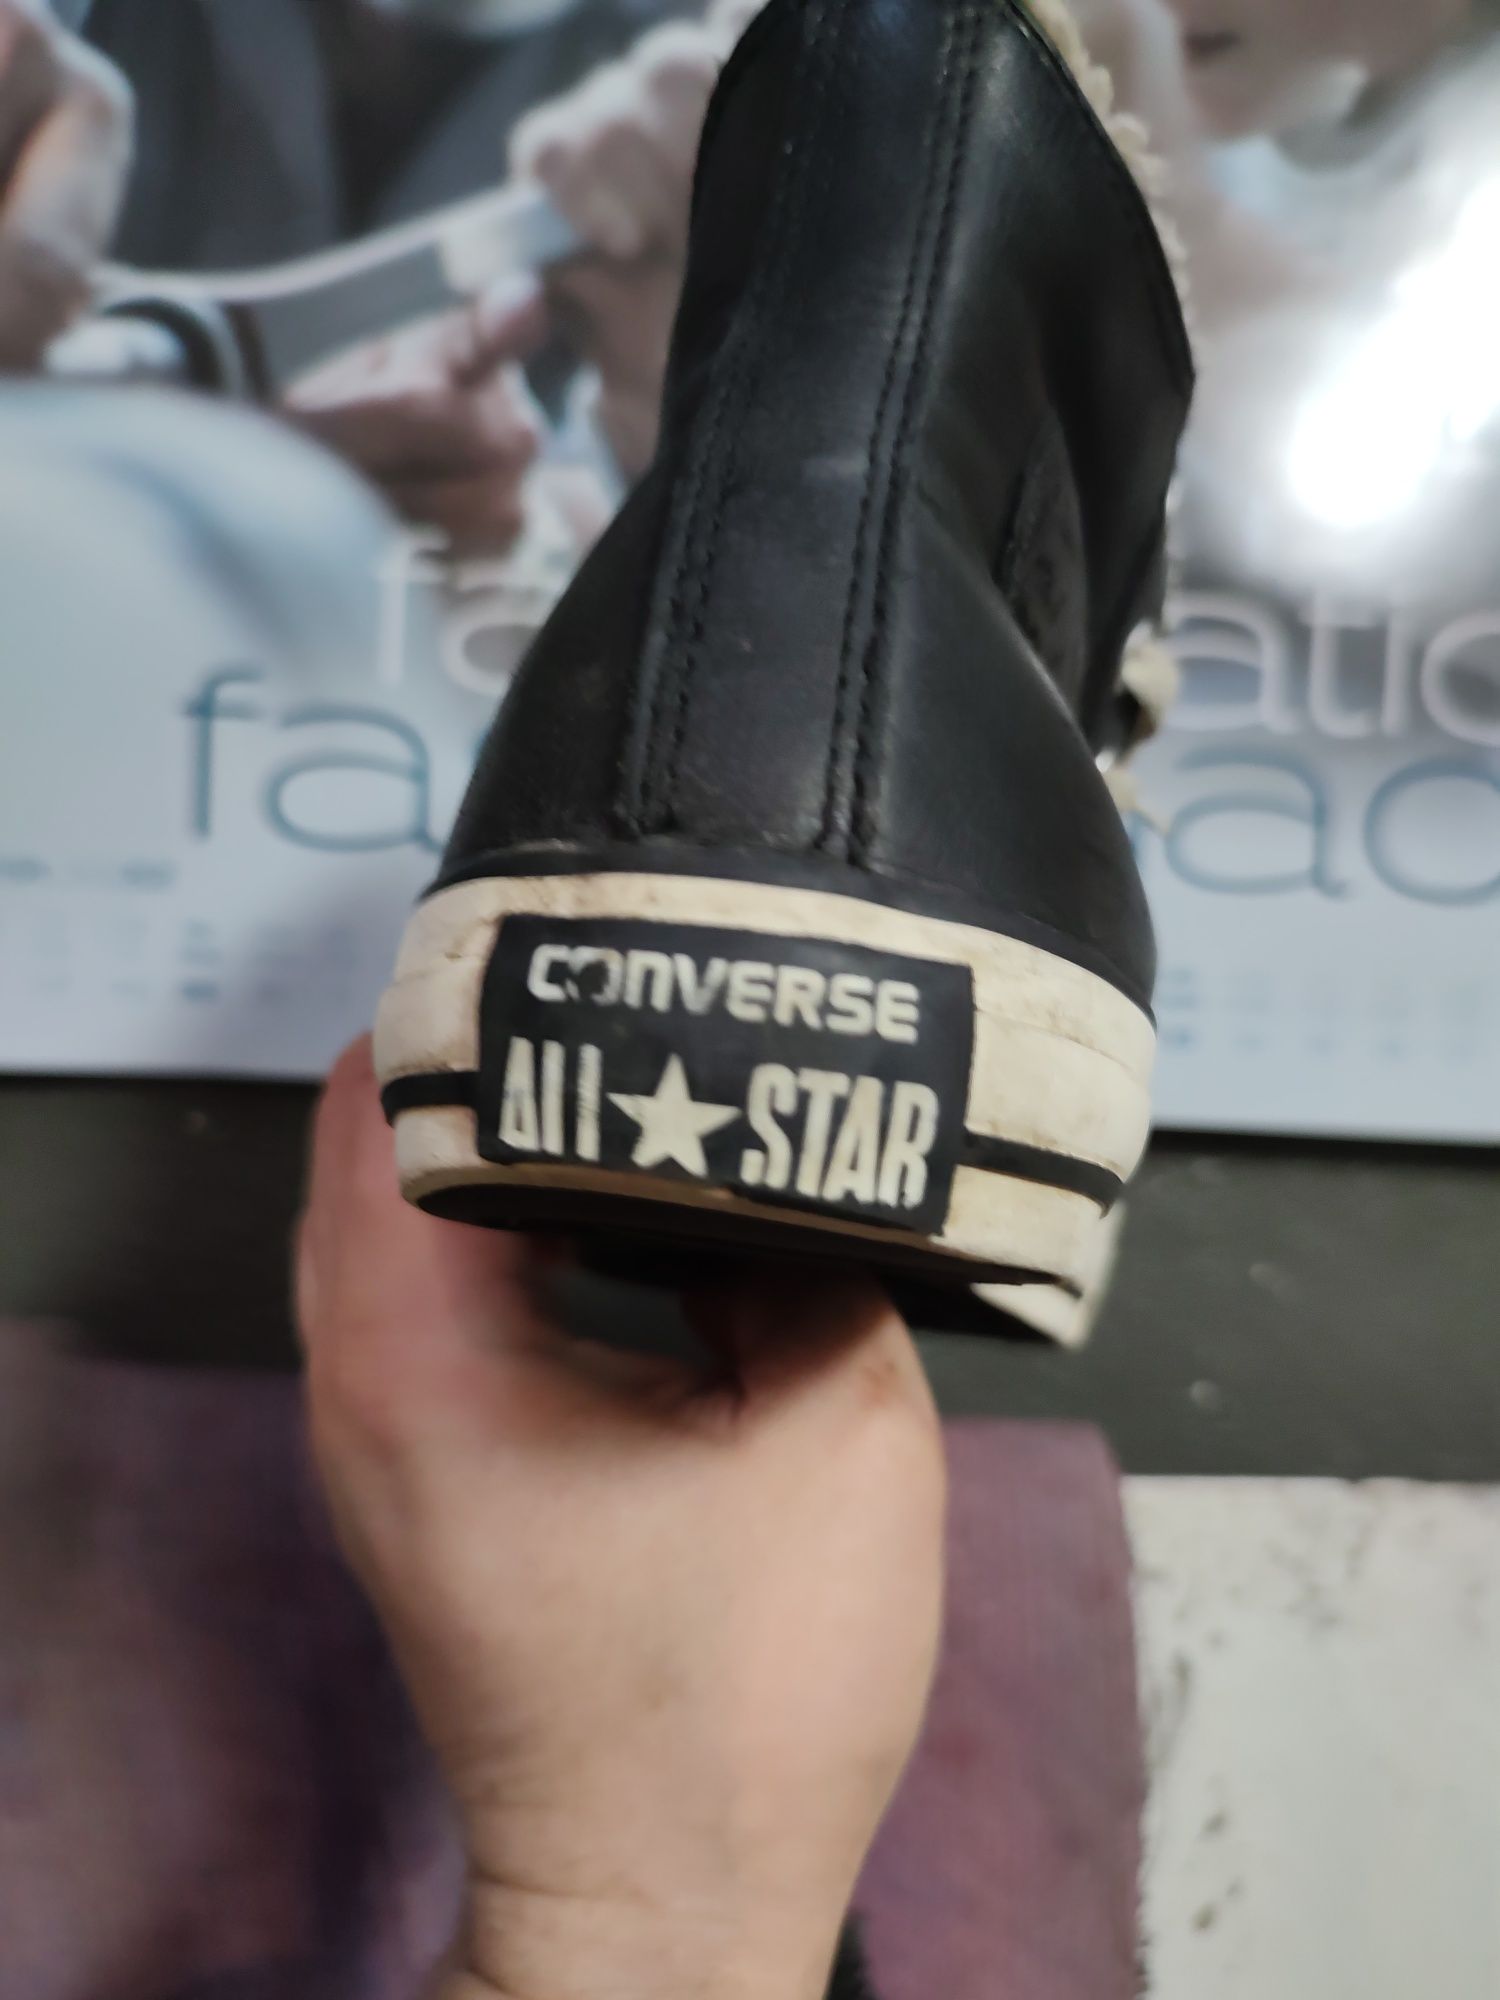 Buty skórzane Converse 100% oryginalny rozmiar 41 wkładka 26